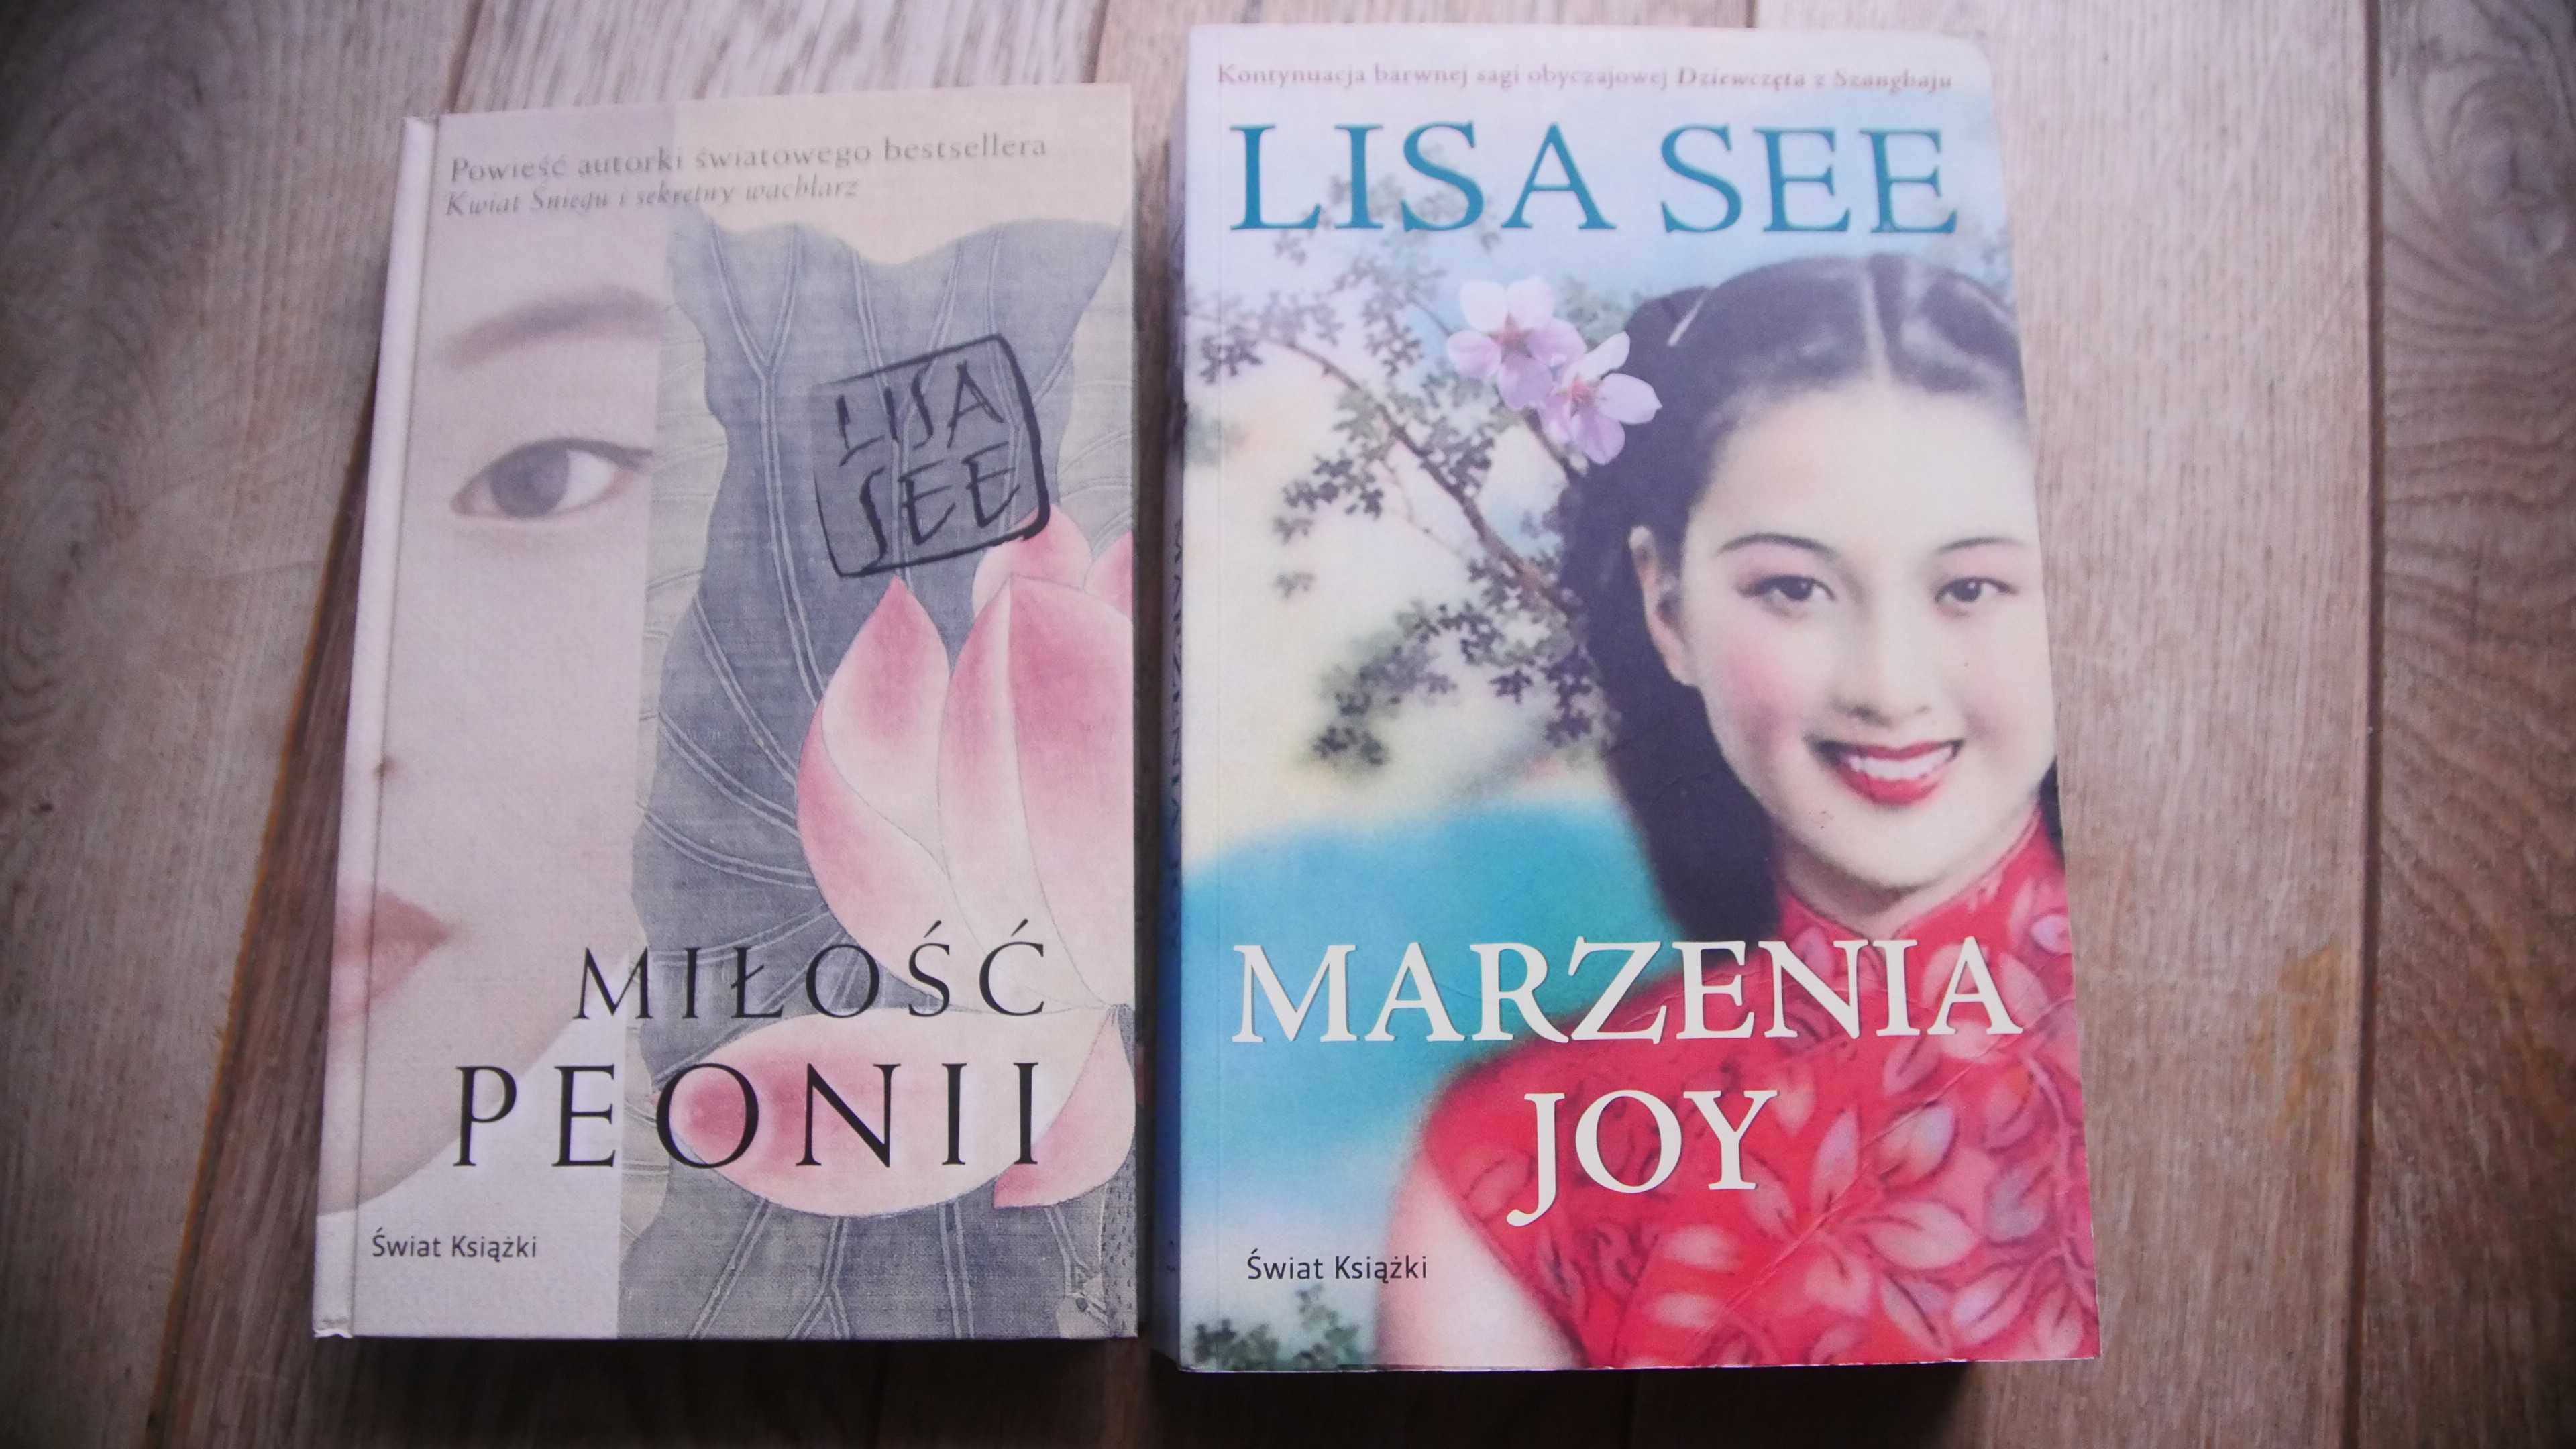 "Miłość Peonii" & "Marzenia Joy" - Lisa See - 2 książki